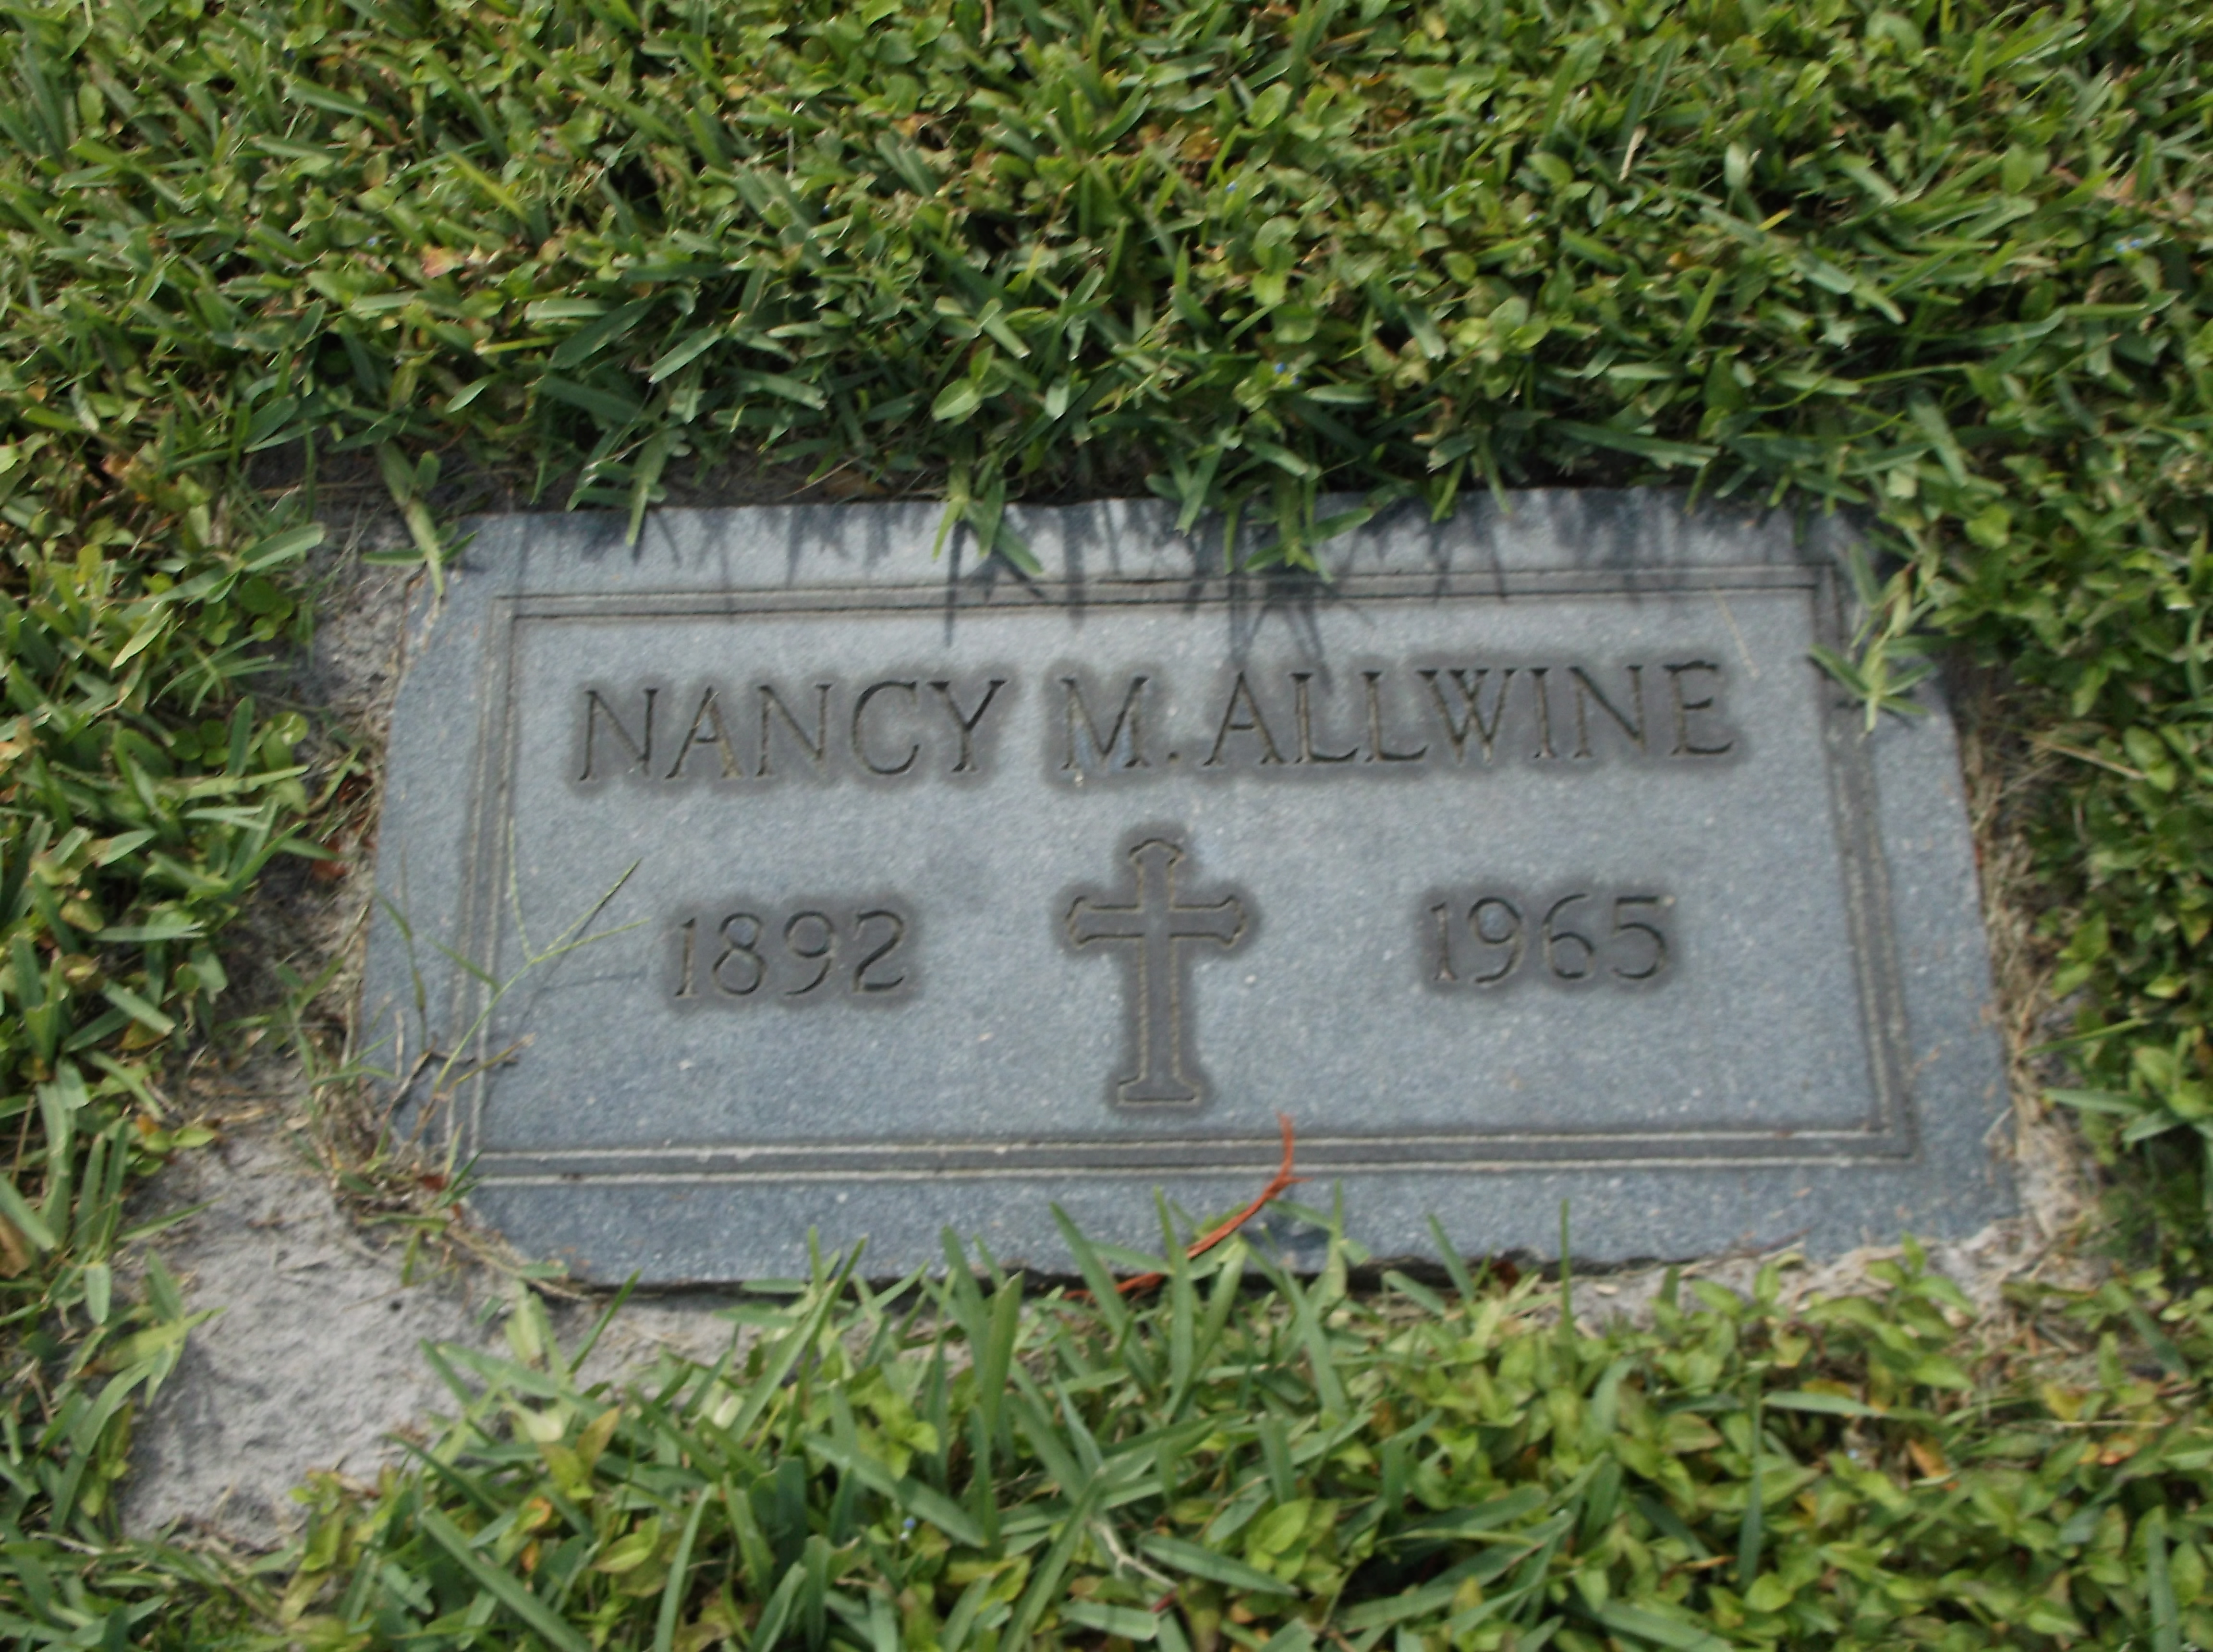 Nancy M Allwine